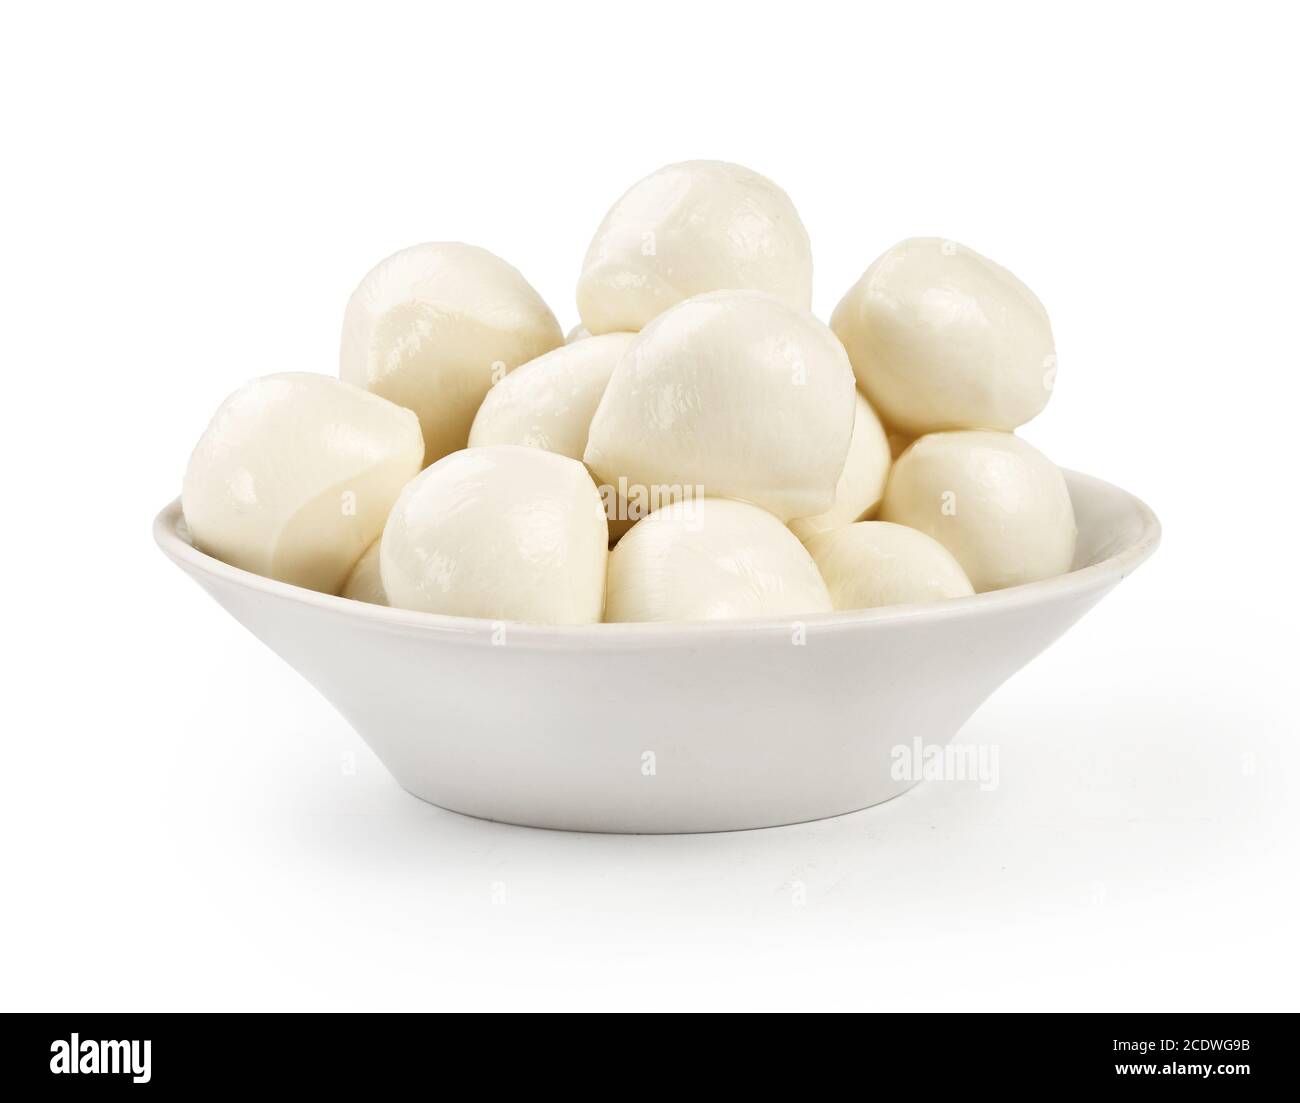 Mozzarella balls in white bowl isolated on white background. Stock Photo